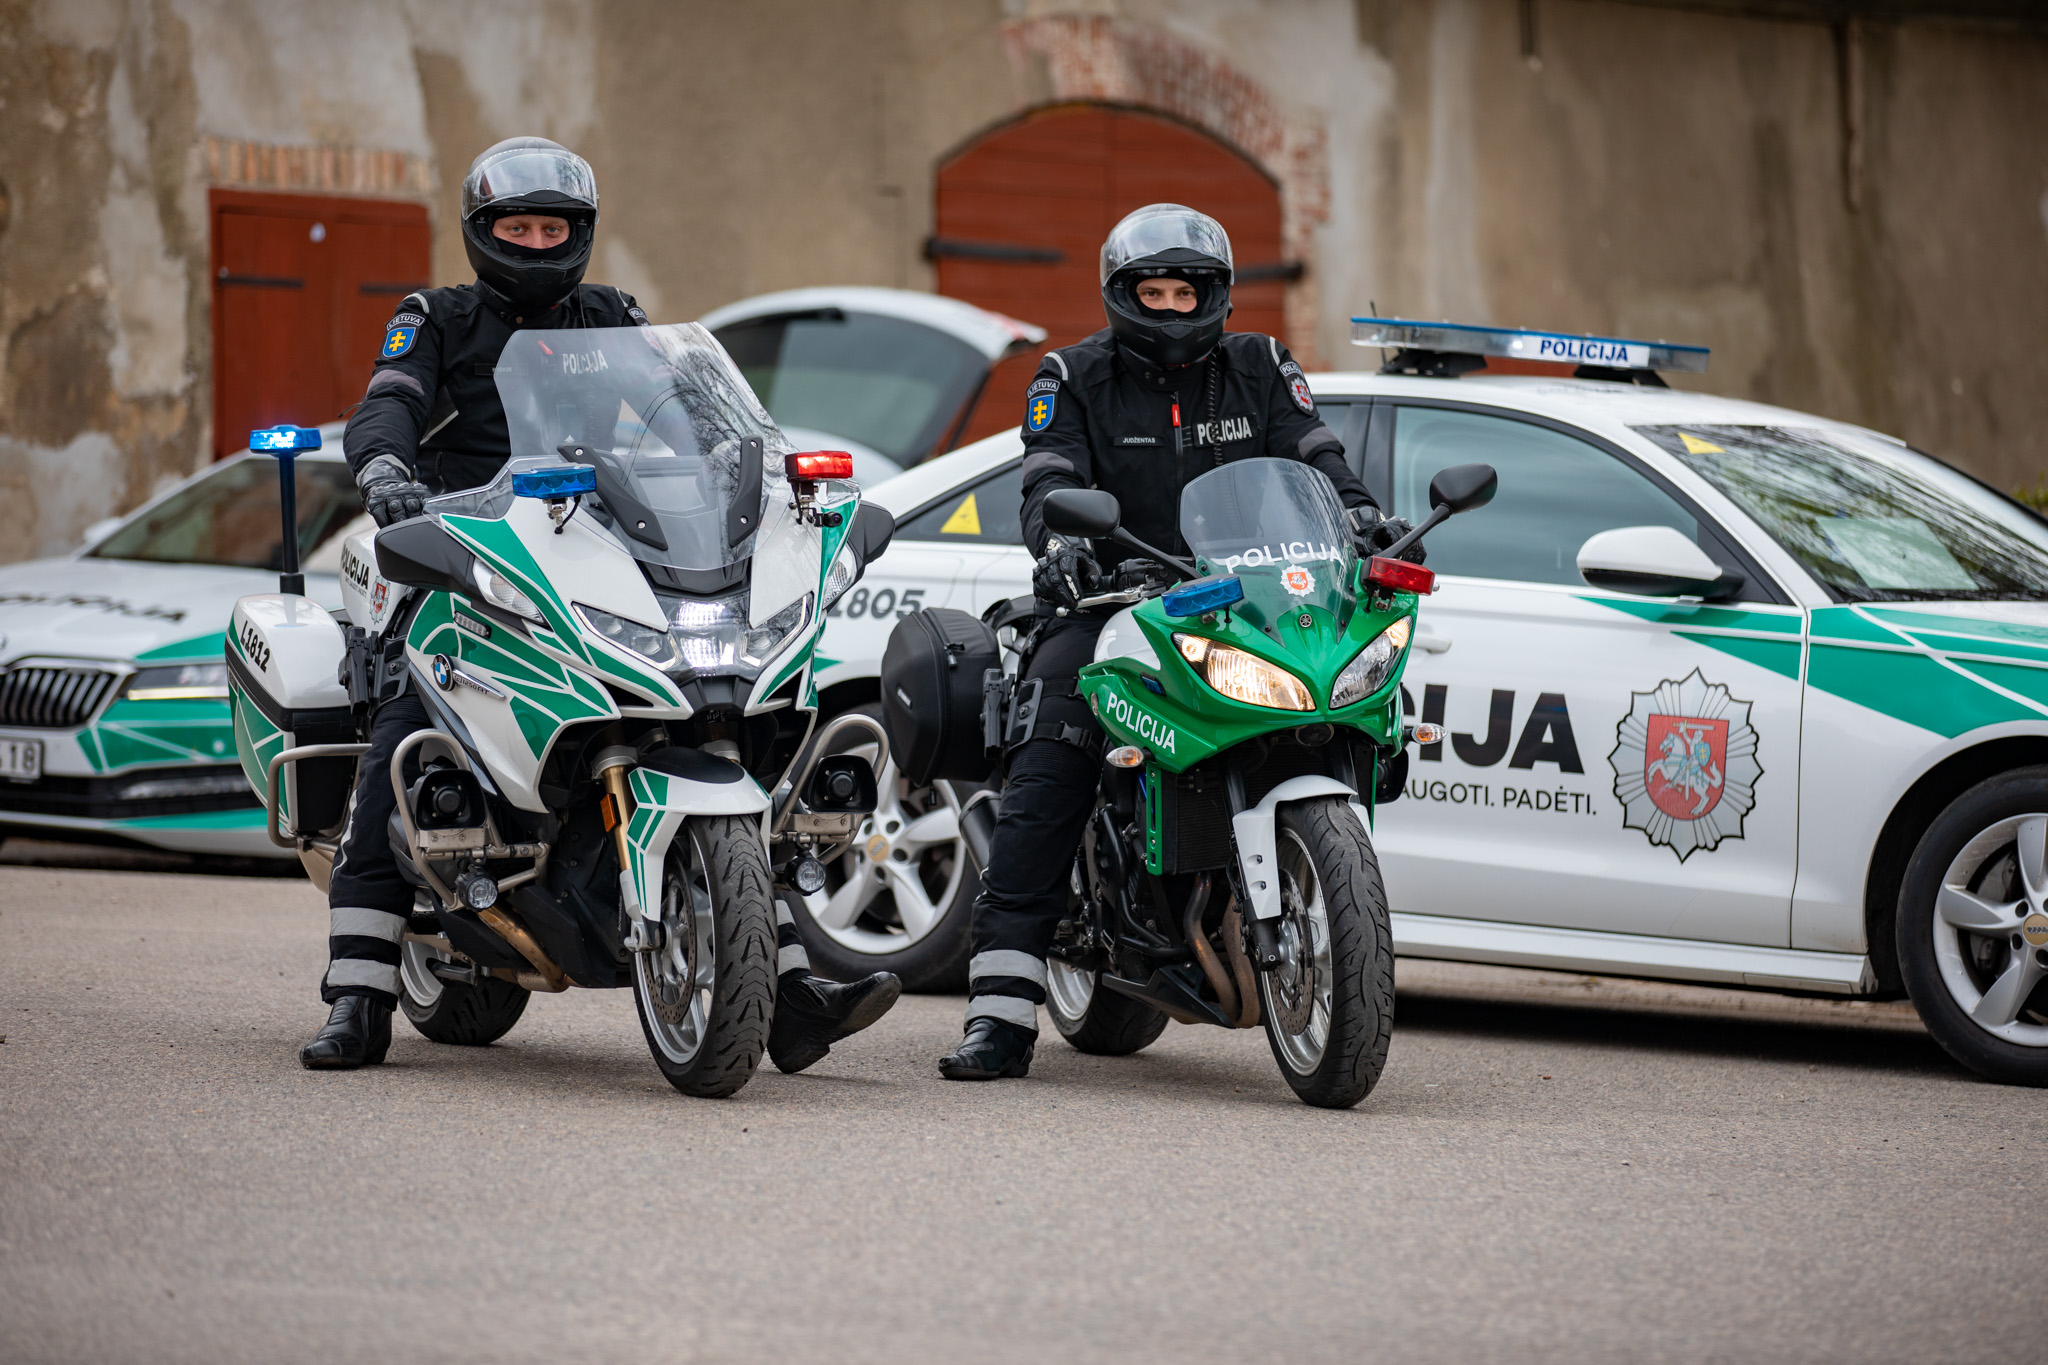 Policija motociklai